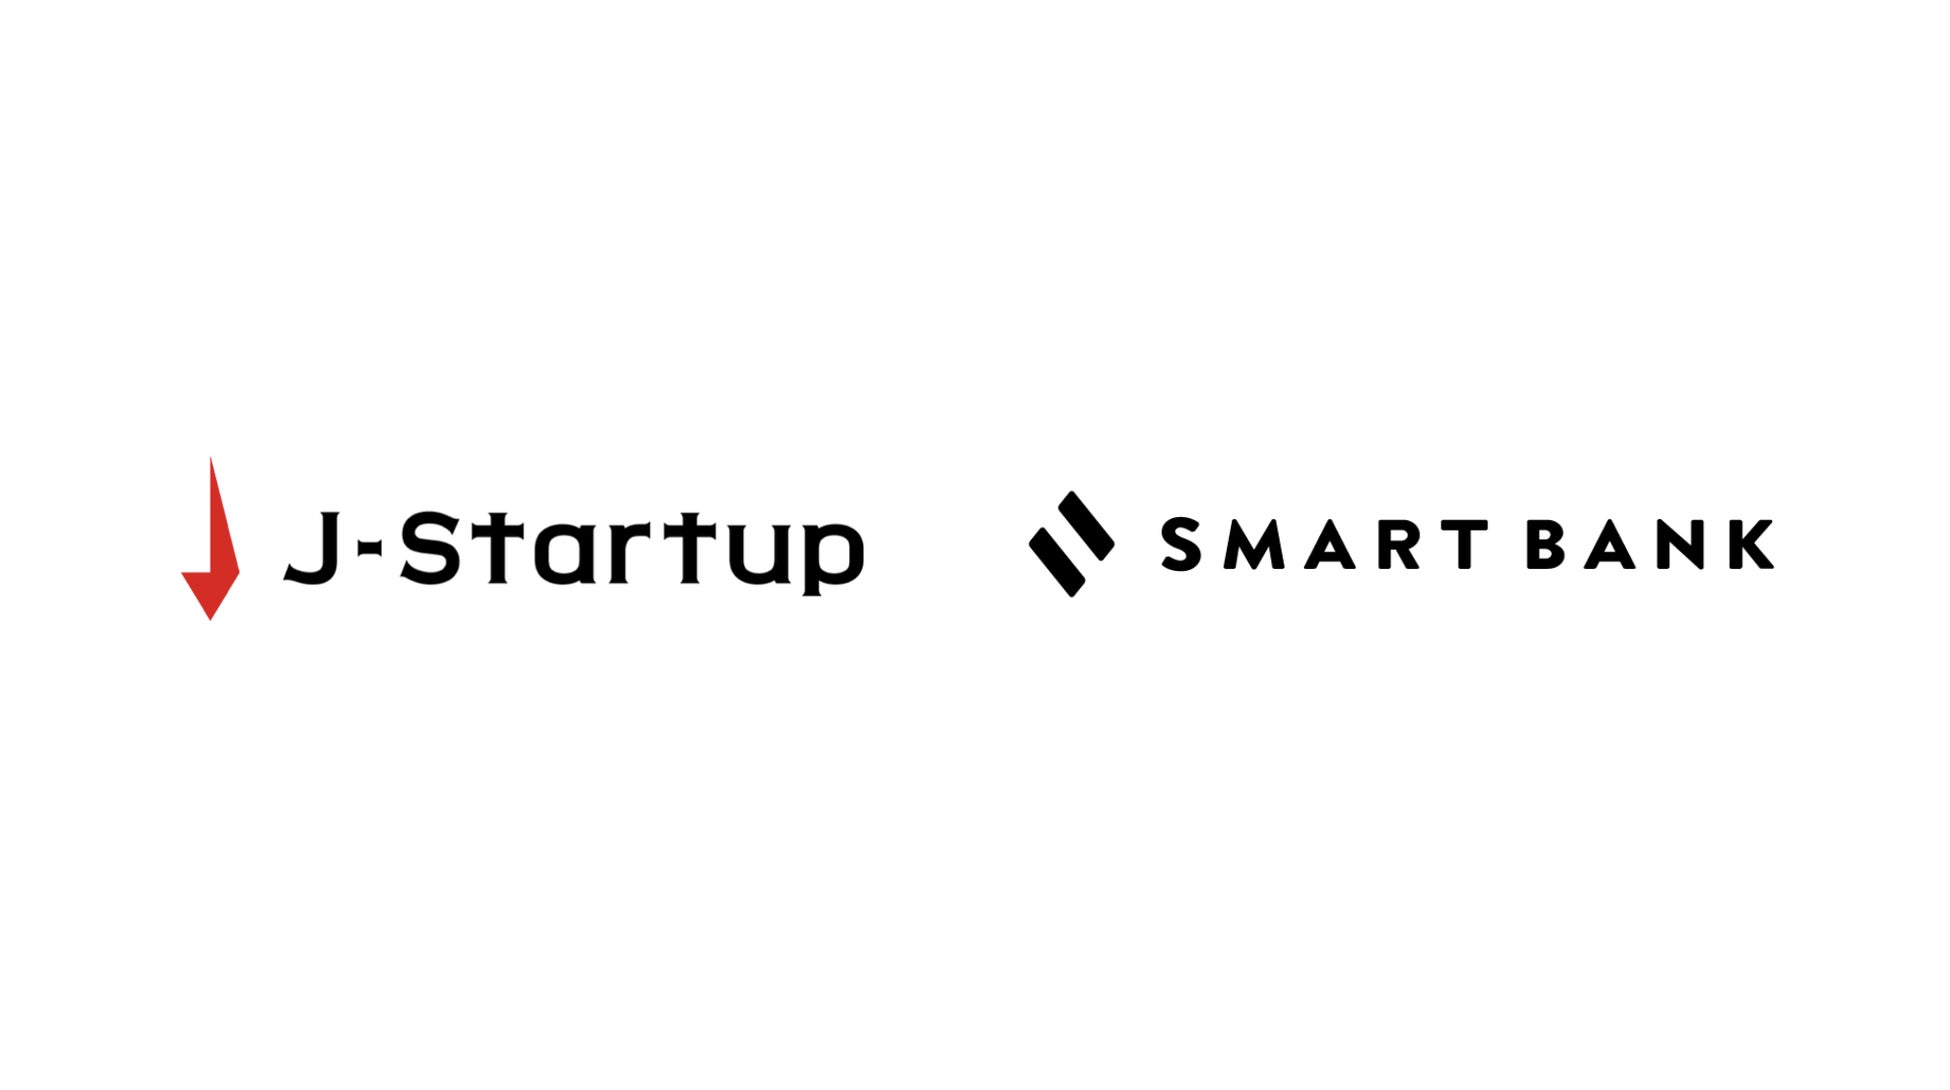 スマートバンク、経産省支援「J-Startup企業」に選出